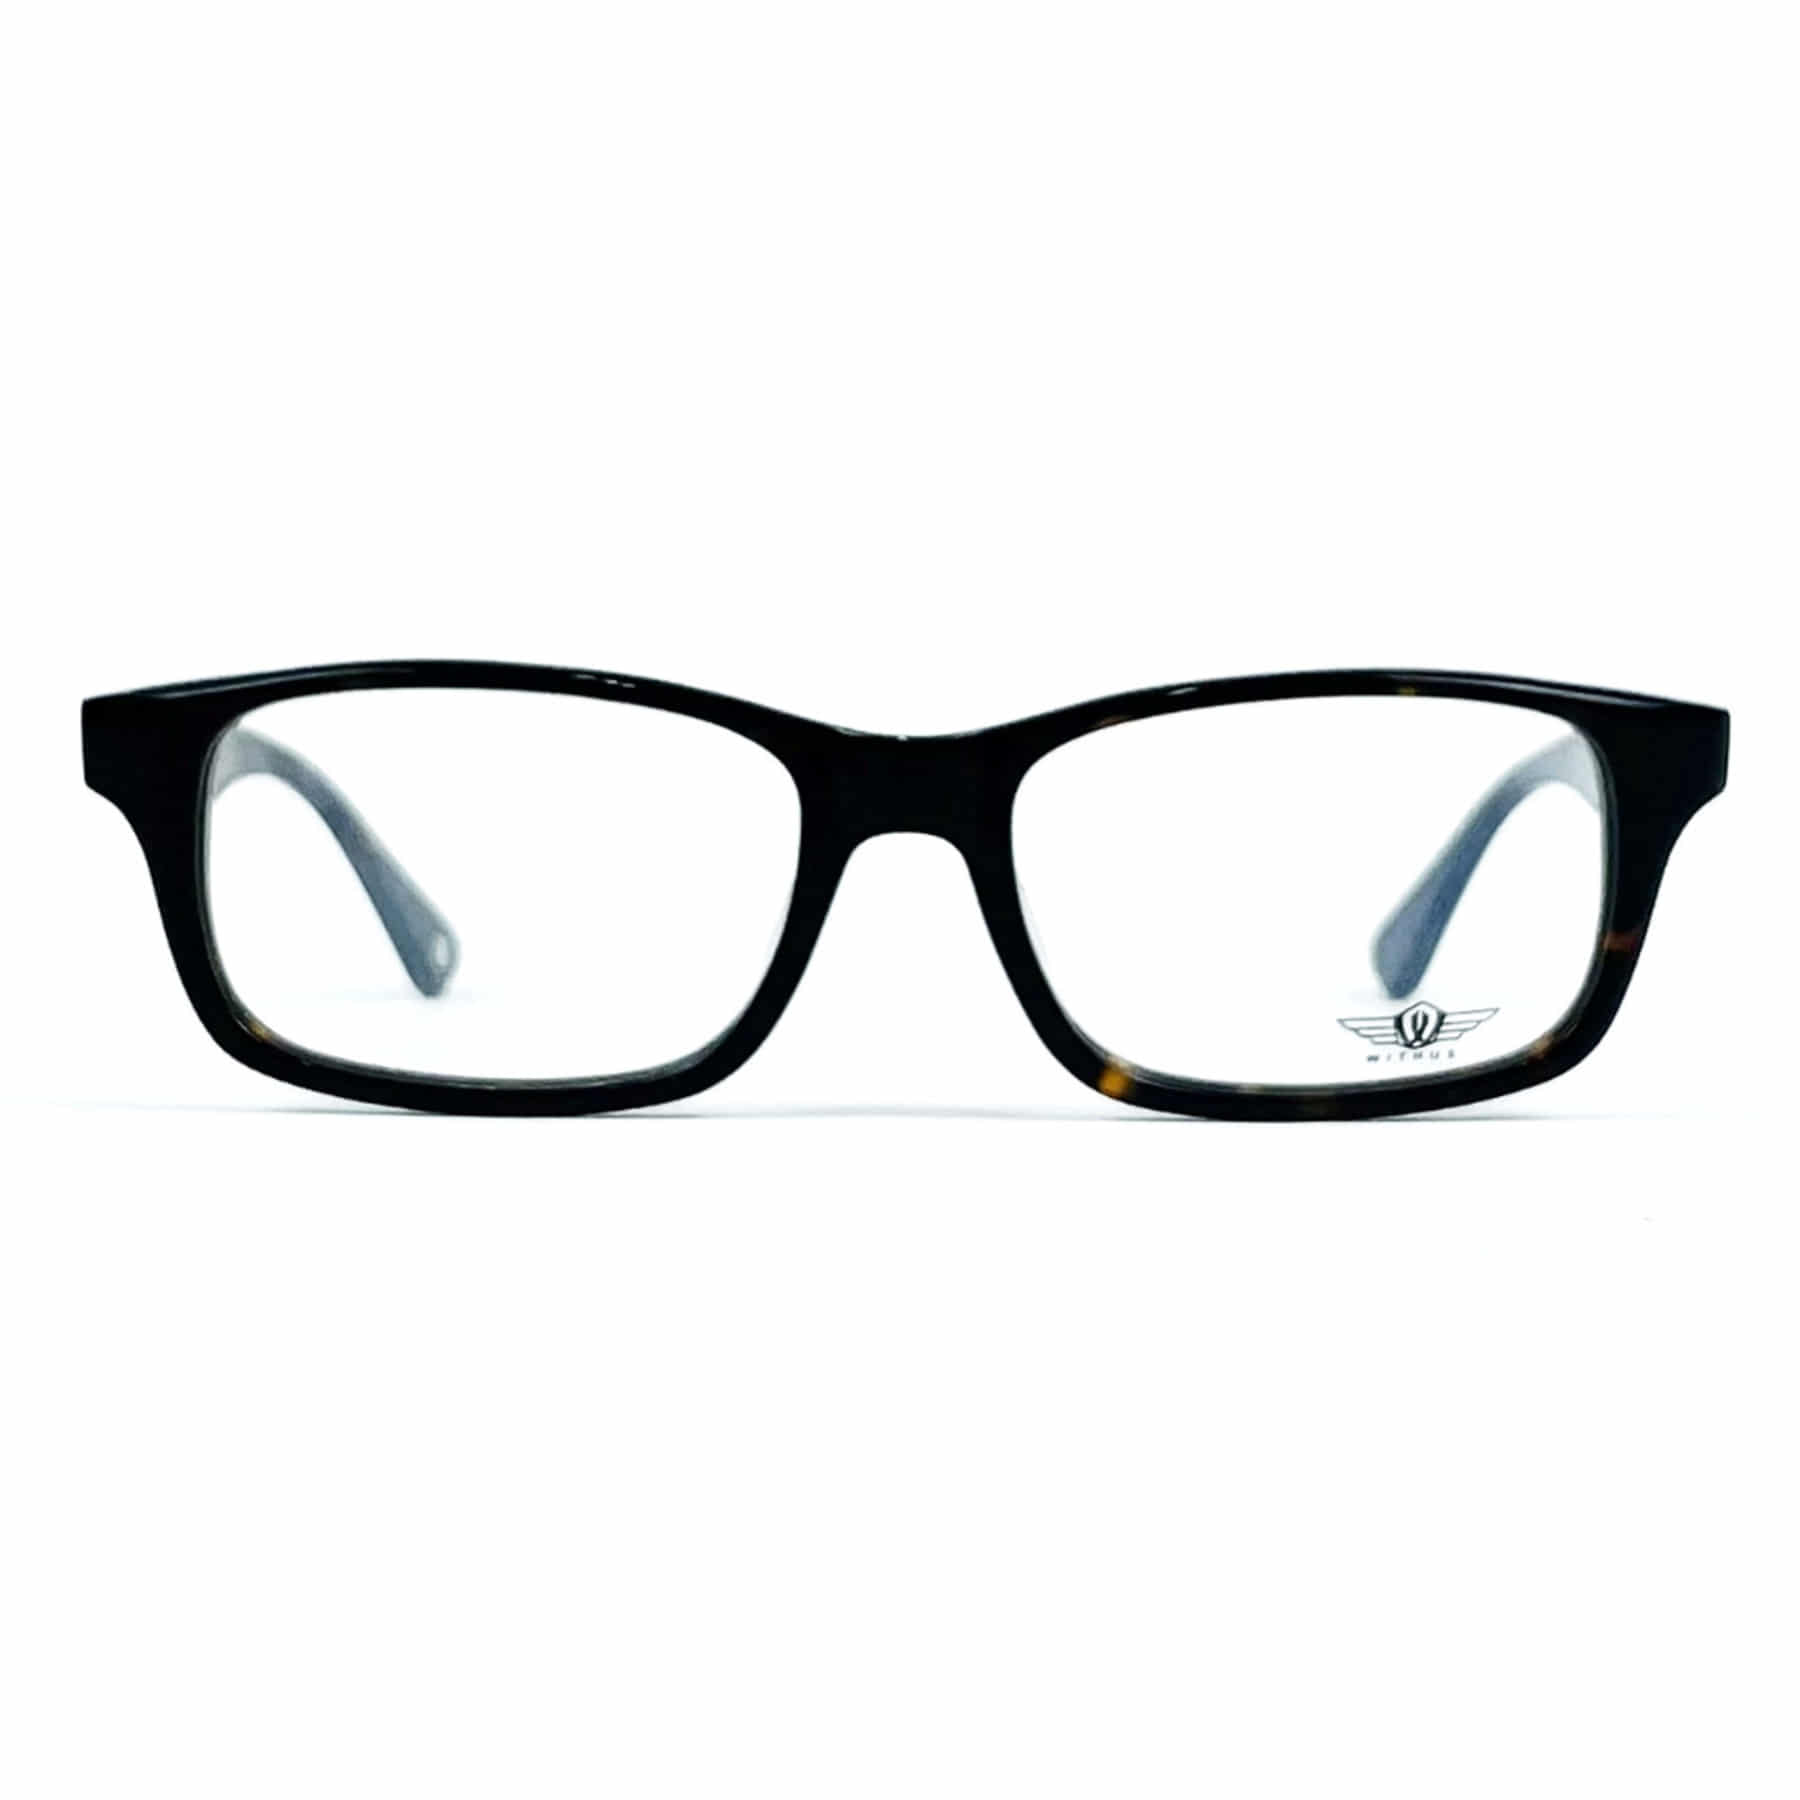 WITHUS-8120, Korean glasses, sunglasses, eyeglasses, glasses